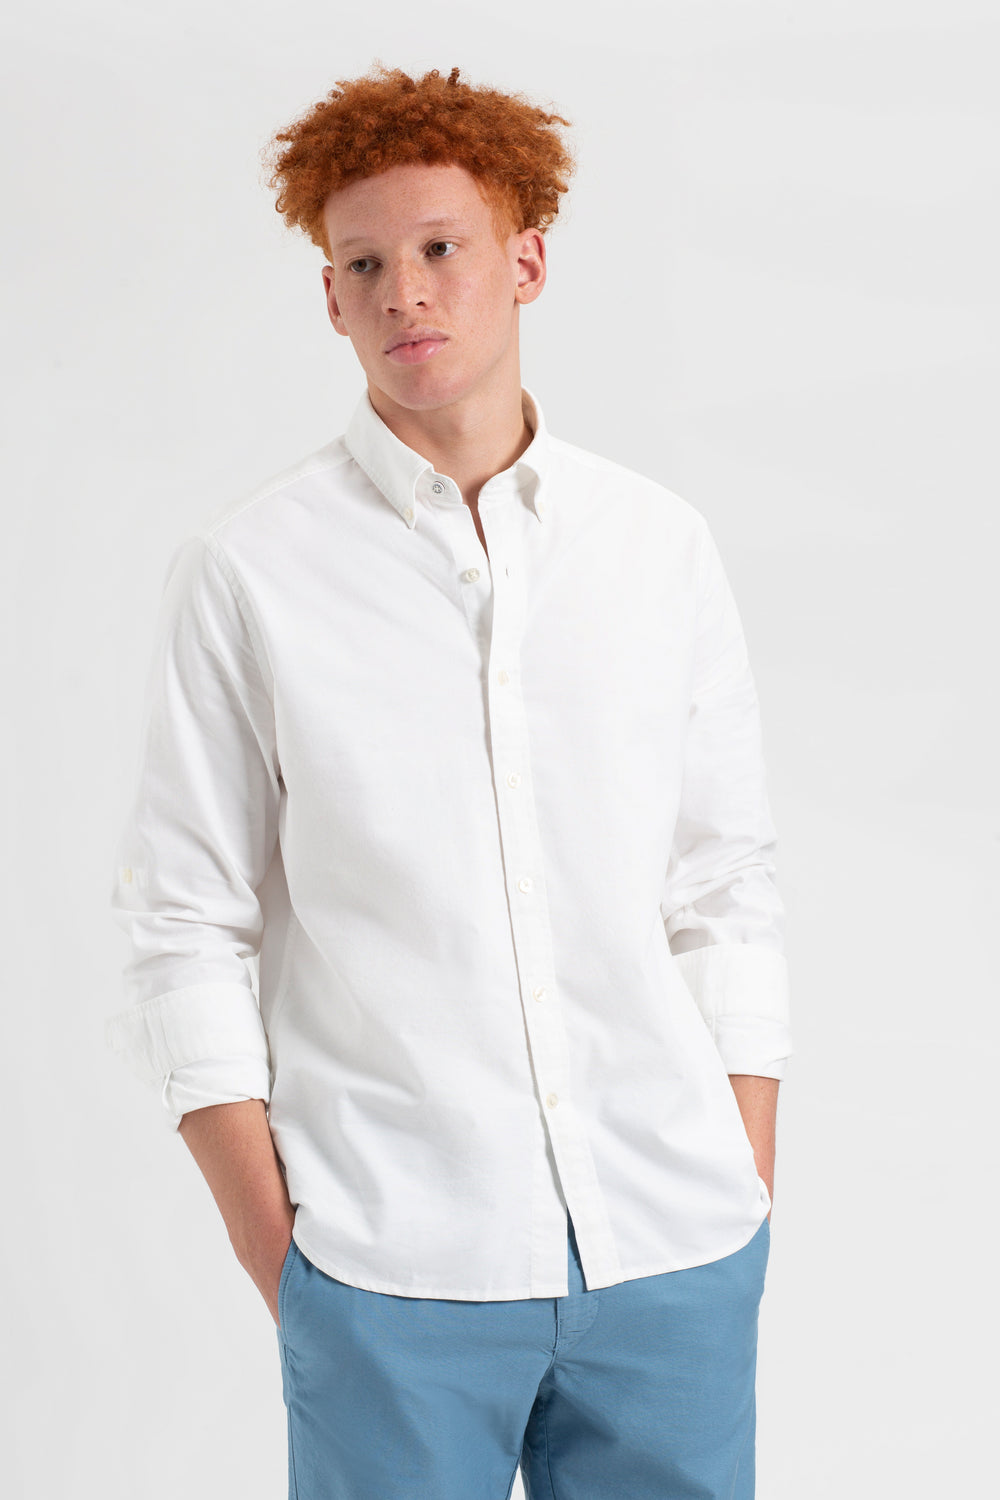 St. Ives Resort Oxford Shirt - White - Ben Sherman